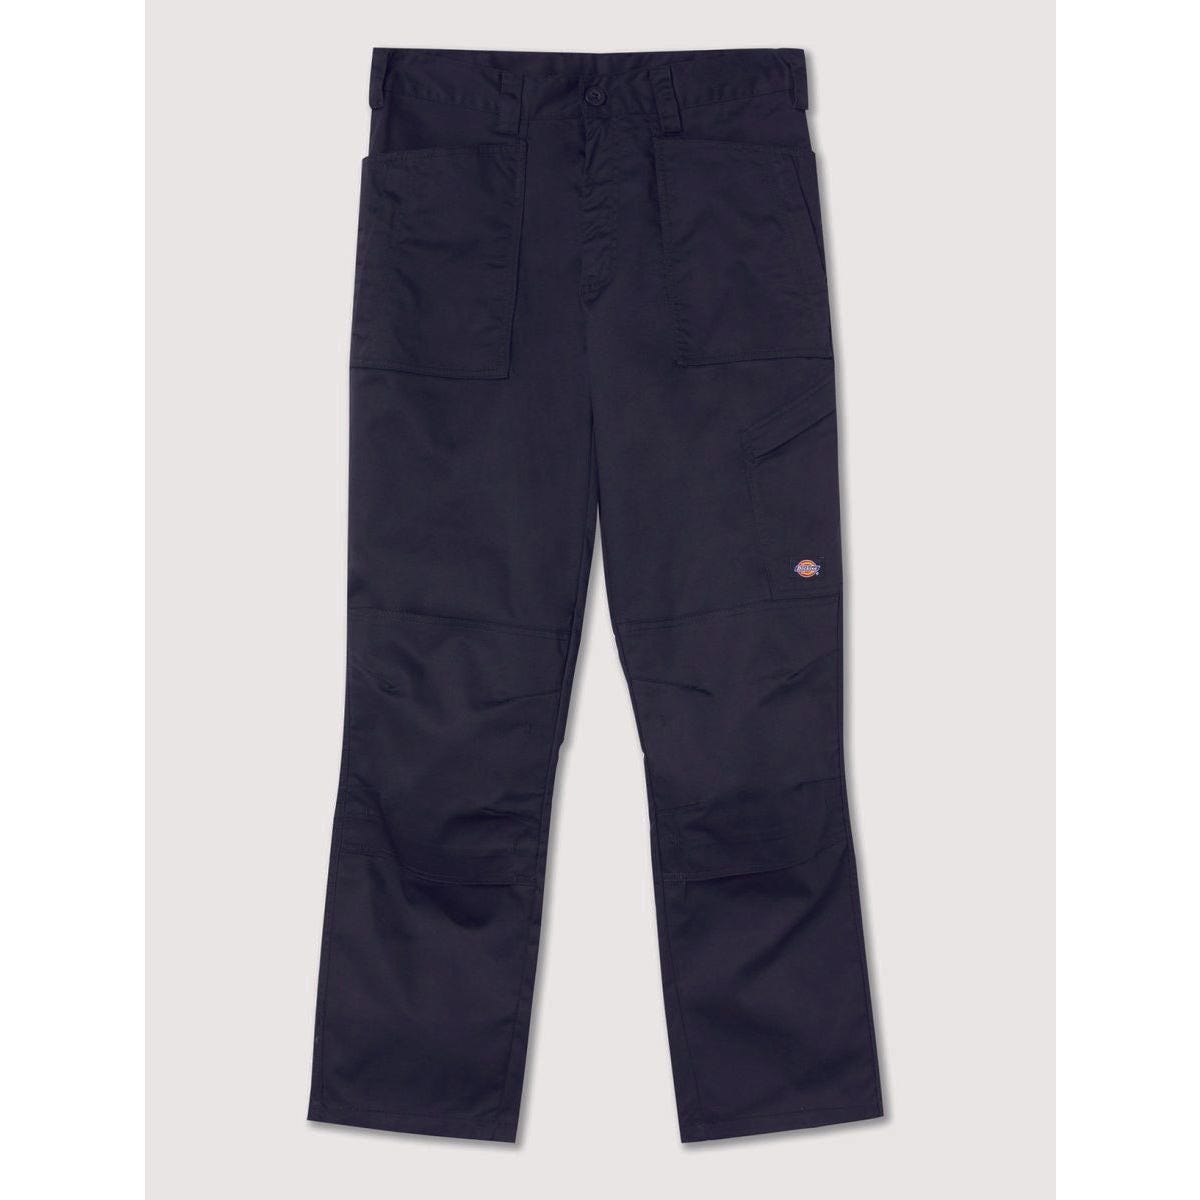 Pantalon de travail Action Flex noir - Dickies - Taille 52 7